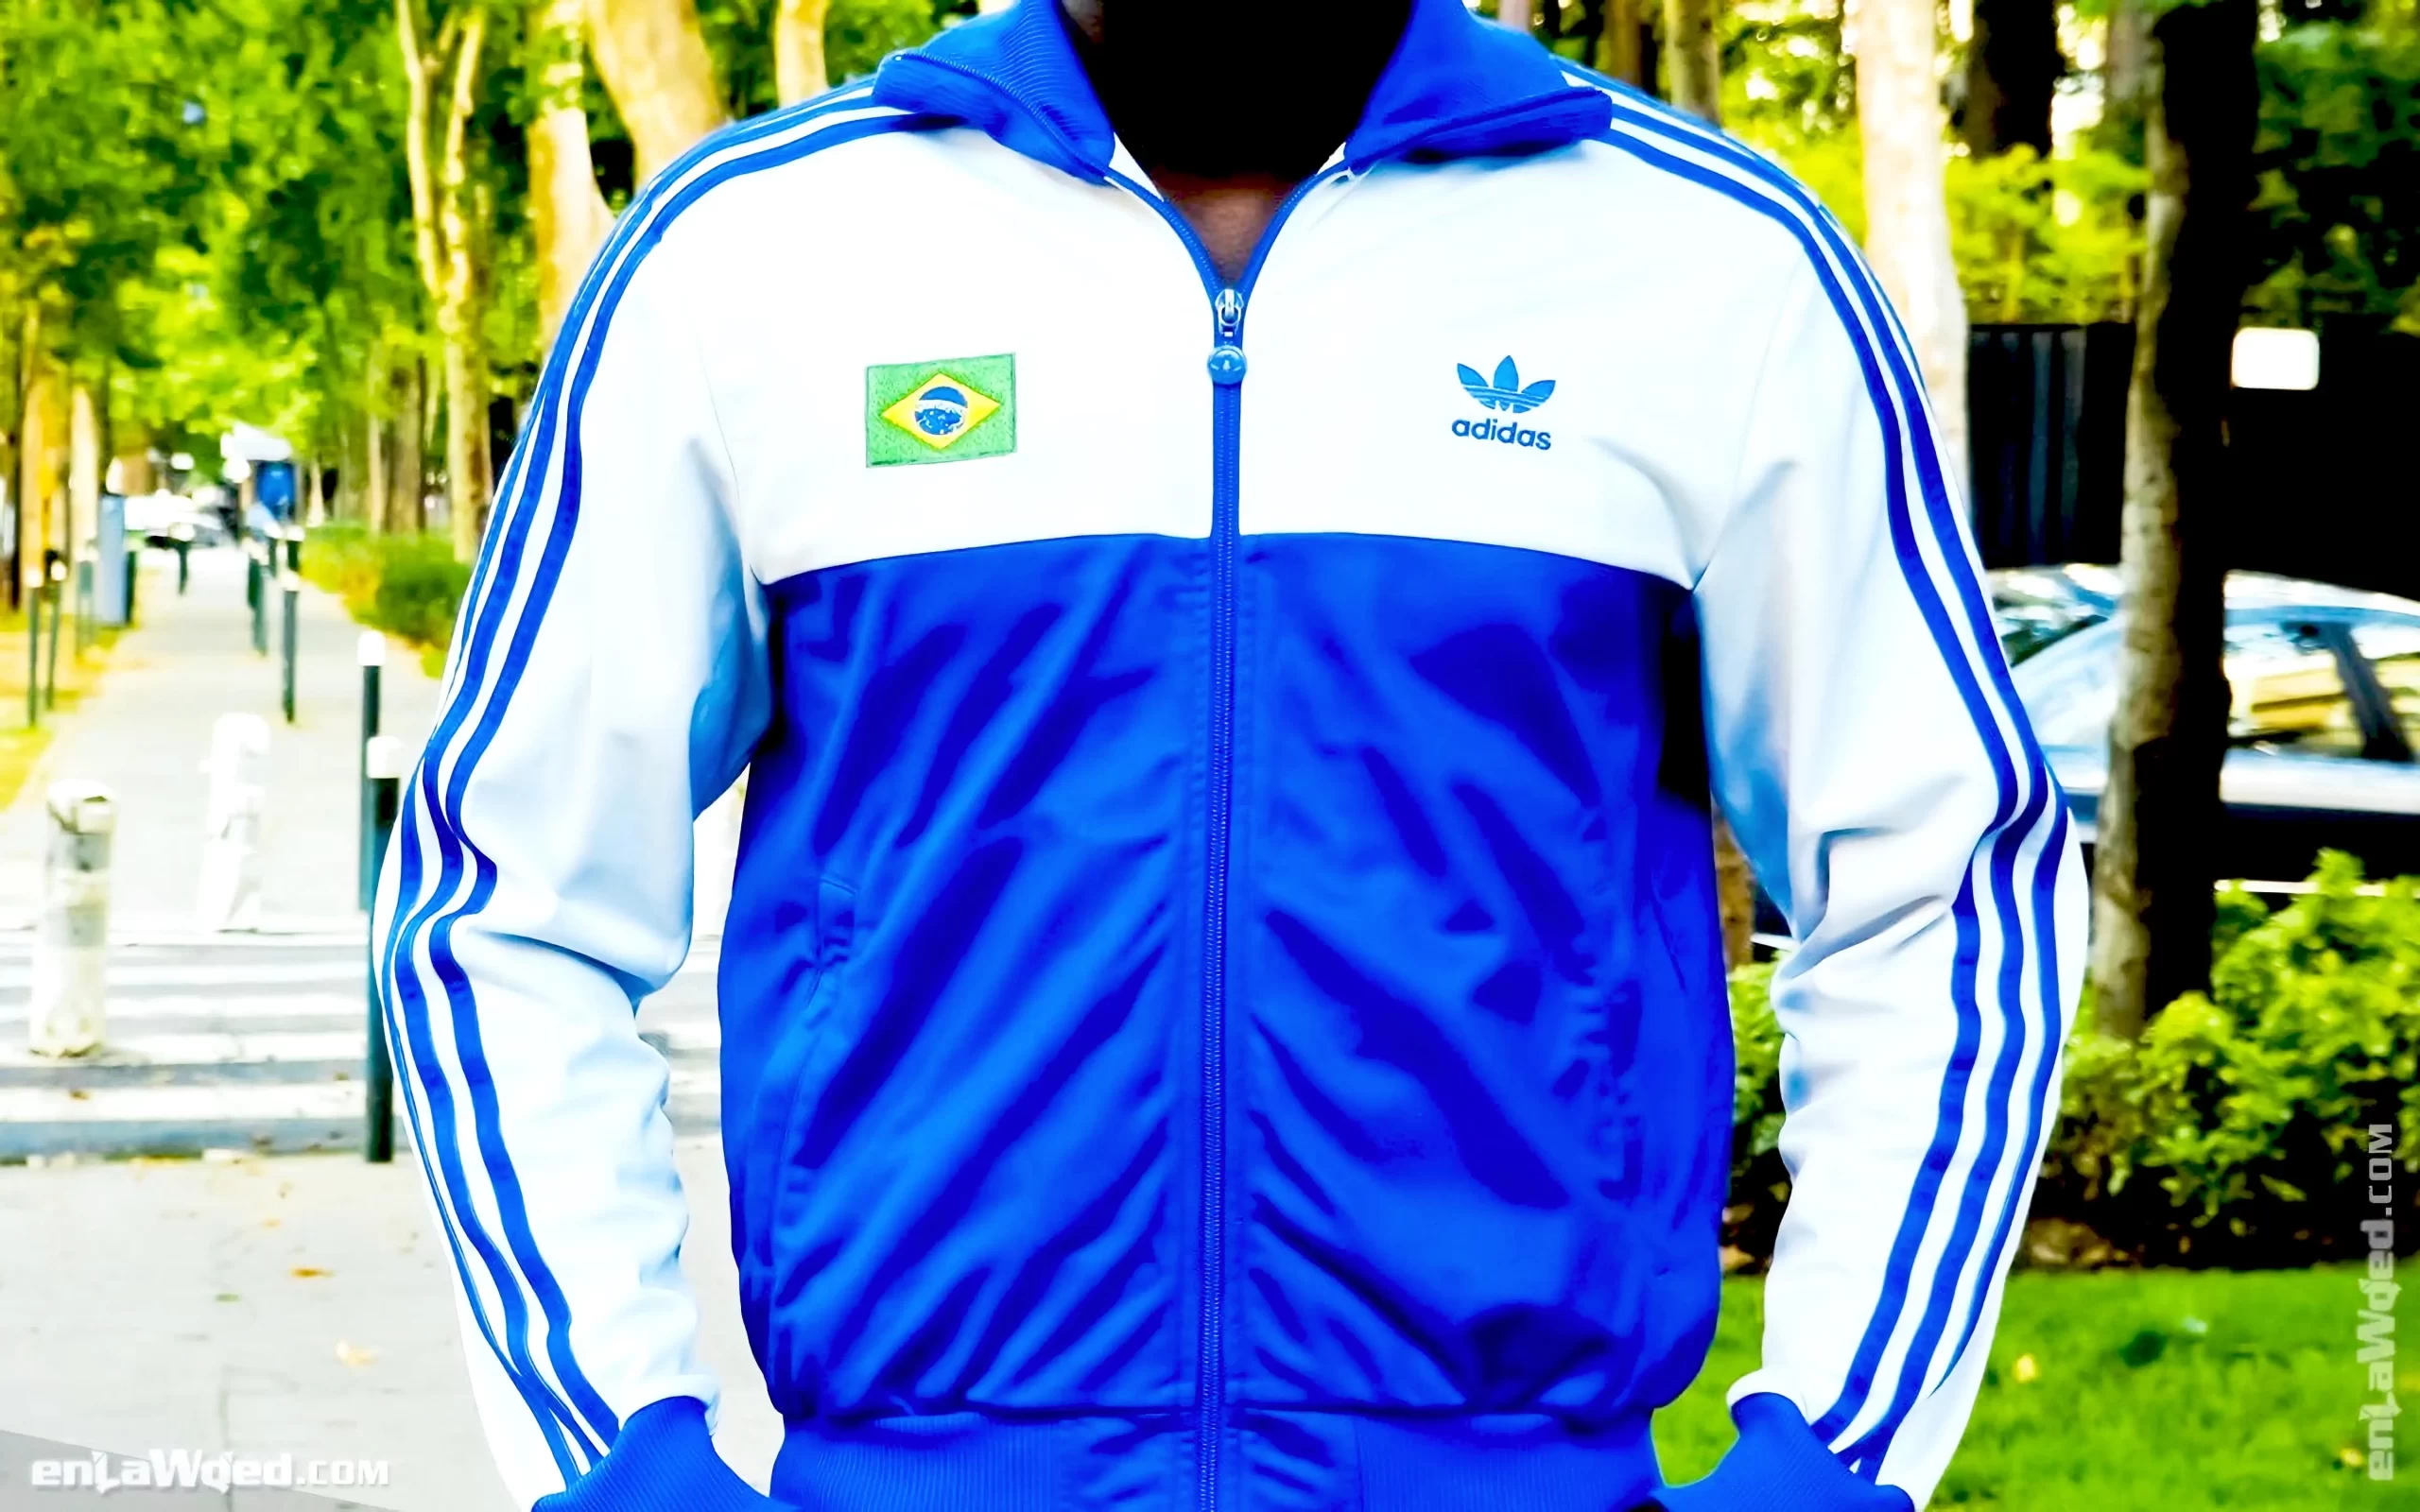 Men’s 2006 Rio de Janeiro TT-One by Adidas Originals: Carefree (EnLawded.com file #lmc5d9vi6j5fdfe9evr)